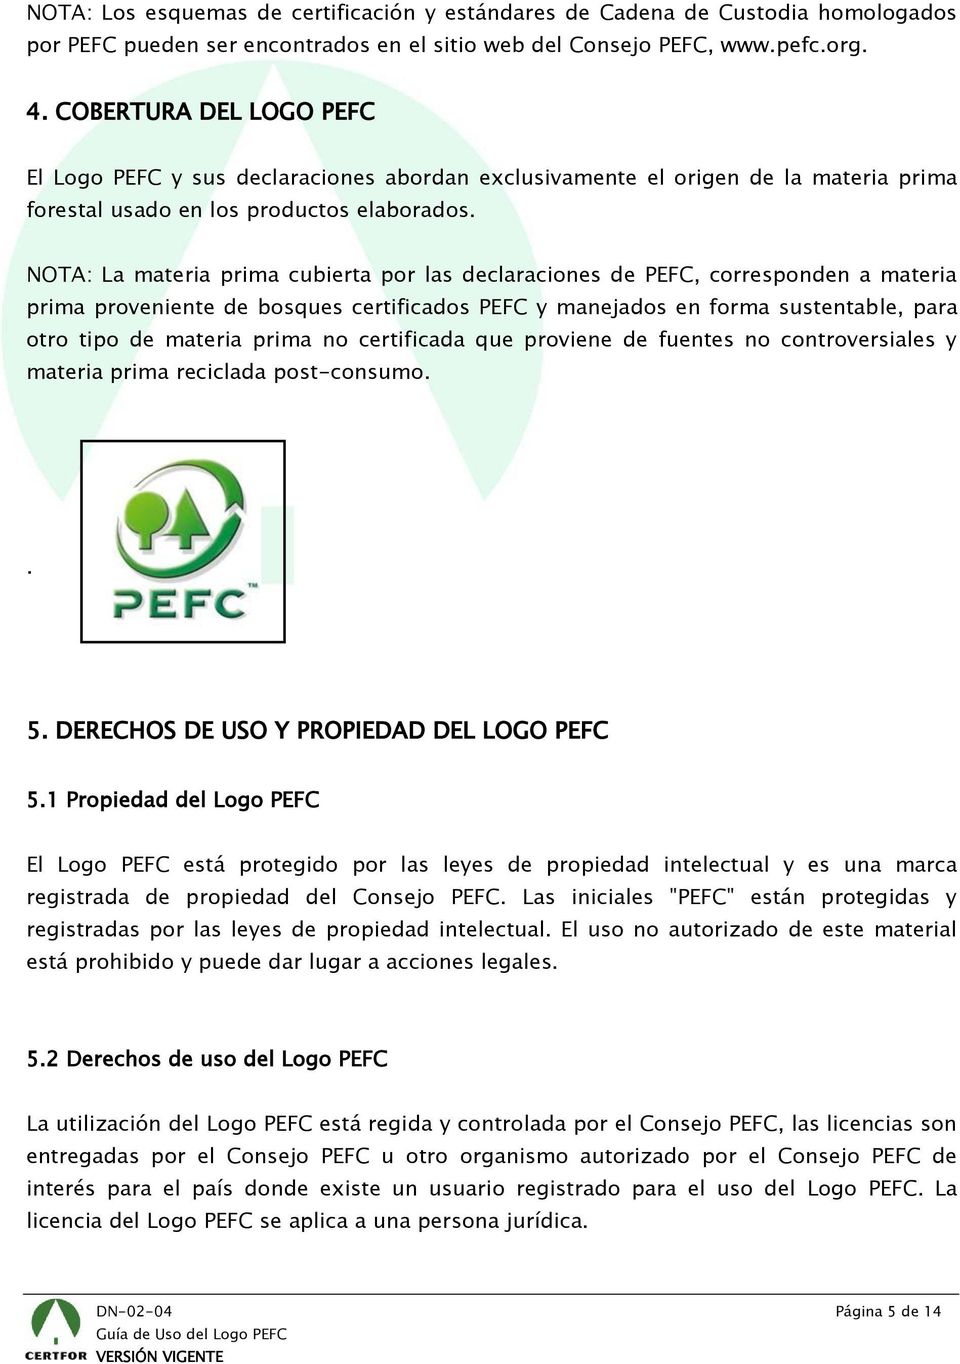 NOTA: La materia prima cubierta por las declaraciones de PEFC, corresponden a materia prima proveniente de bosques certificados PEFC y manejados en forma sustentable, para otro tipo de materia prima